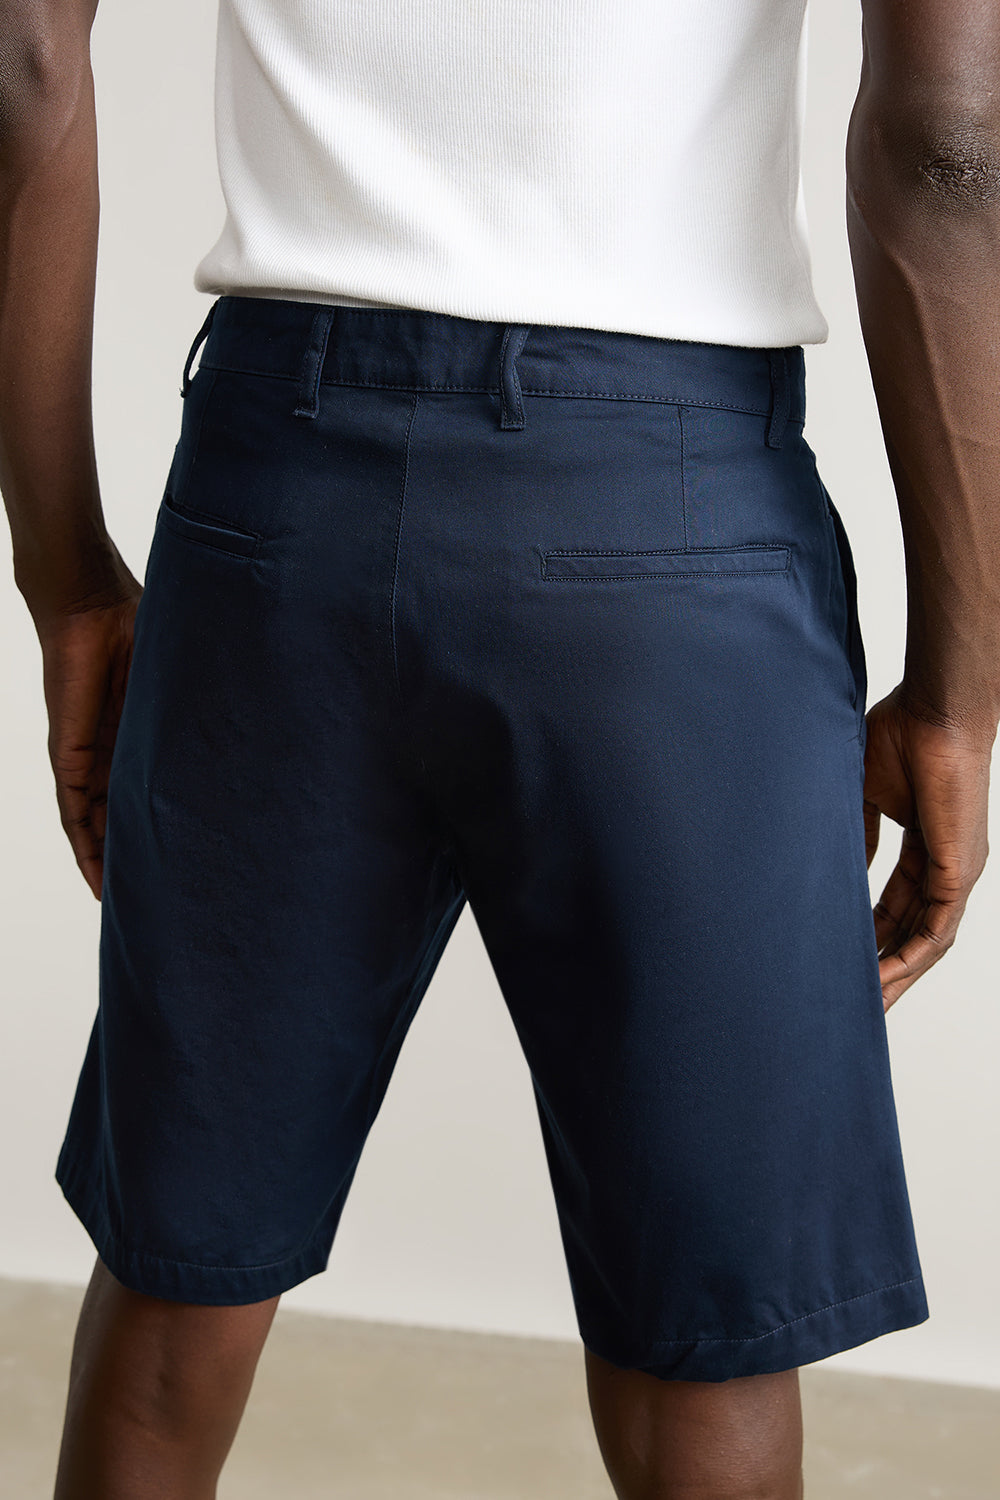 Men's Dark Blue Summer Shorts